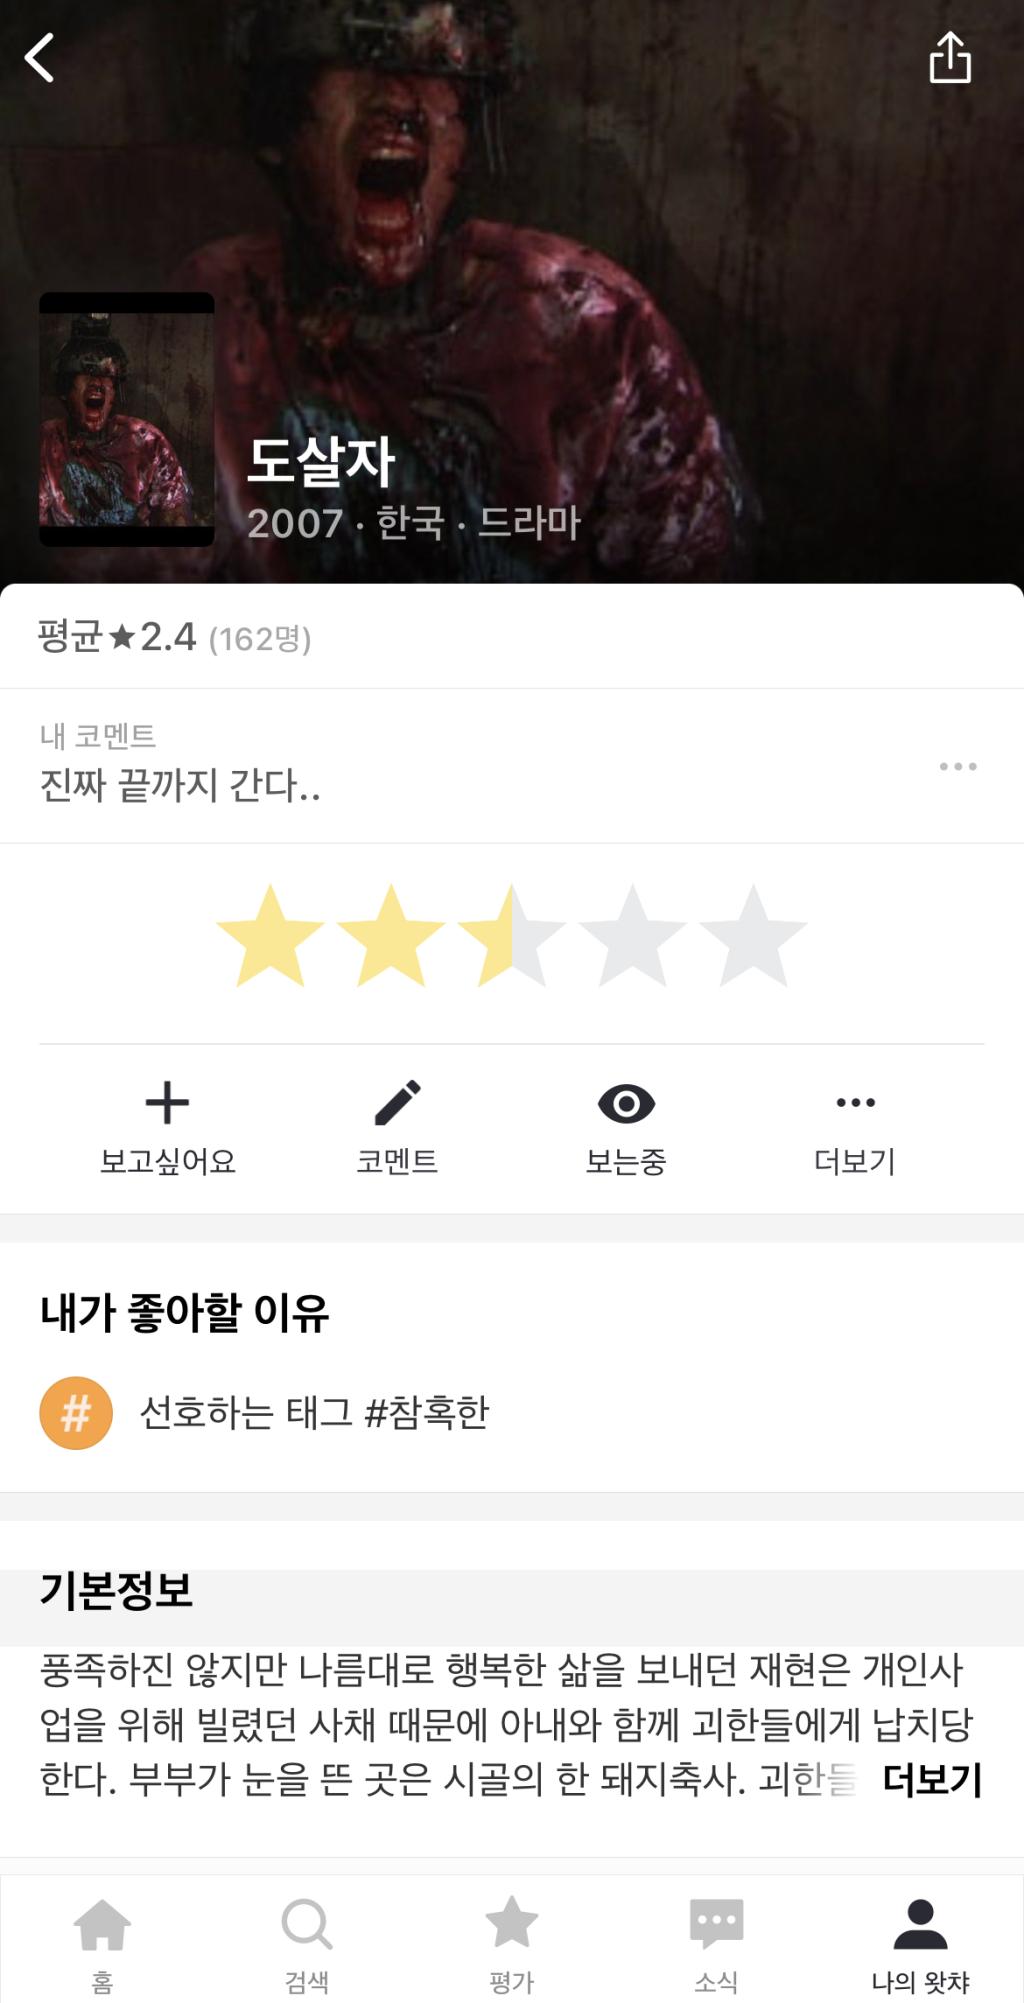 익스트림무비 - (짤주의)한국 고어 영화 '도살자'를 아시나요?